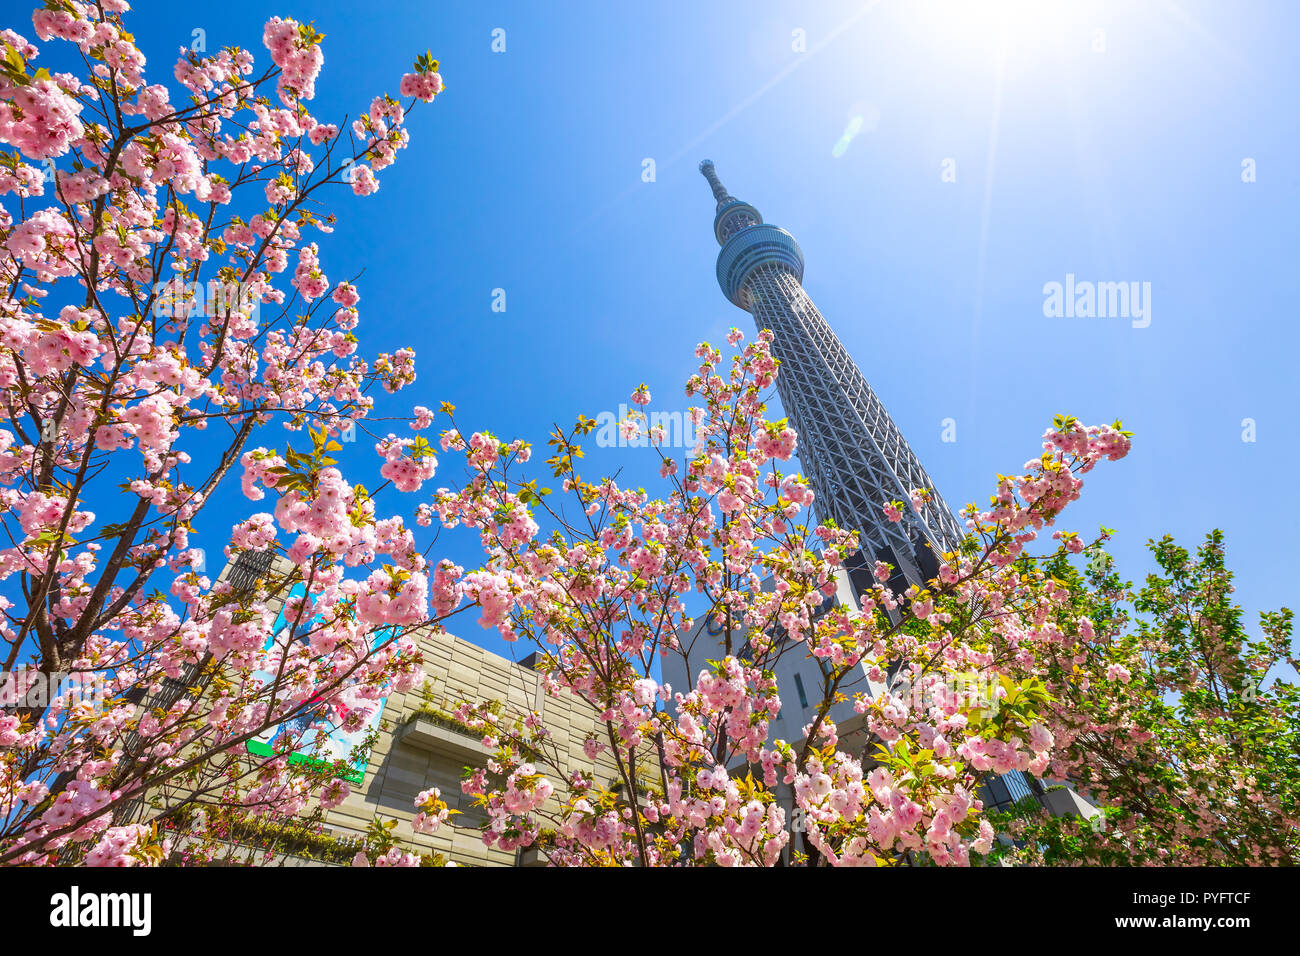 Tokyo, Giappone - 19 Aprile 2017: Tokyo Skytree e Sakura albero in piena fioritura. Tokyo Skytree è la torre più alte del mondo, la radiodiffusione e la torre di osservazione nel quartiere Sumida. Blu cielo soleggiato. Foto Stock